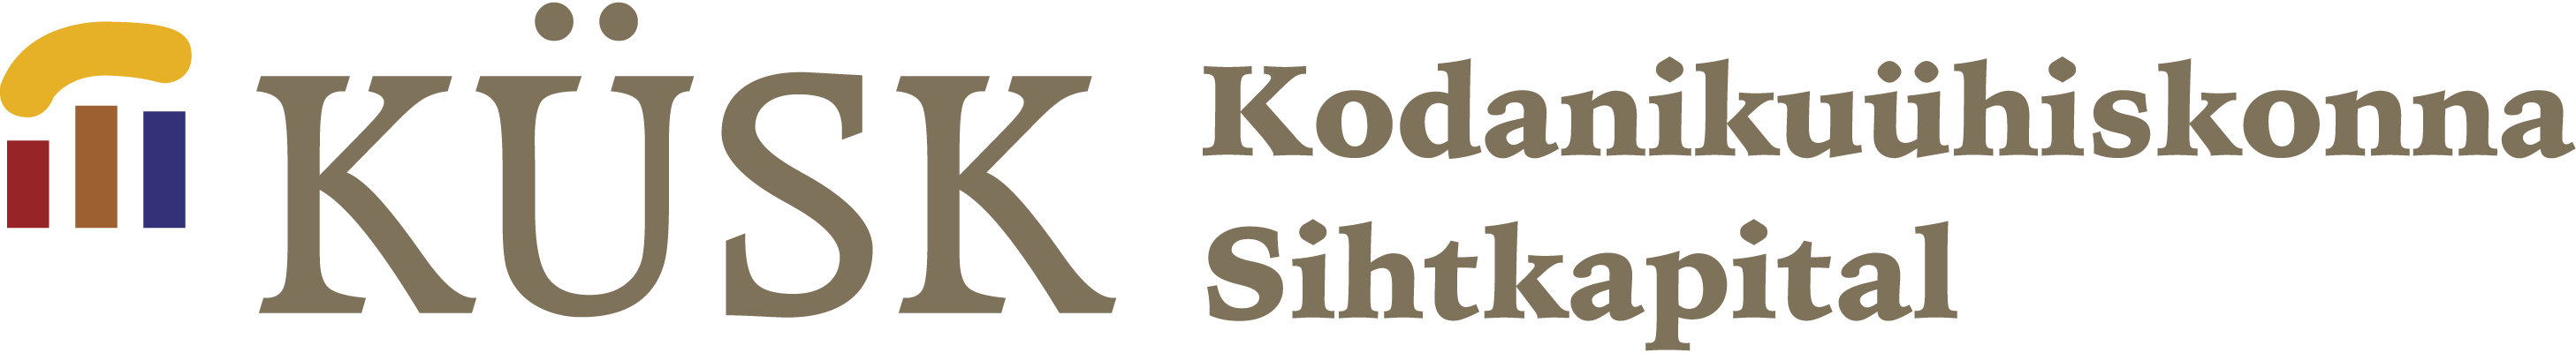 kysk logo ee.png (2915×400)